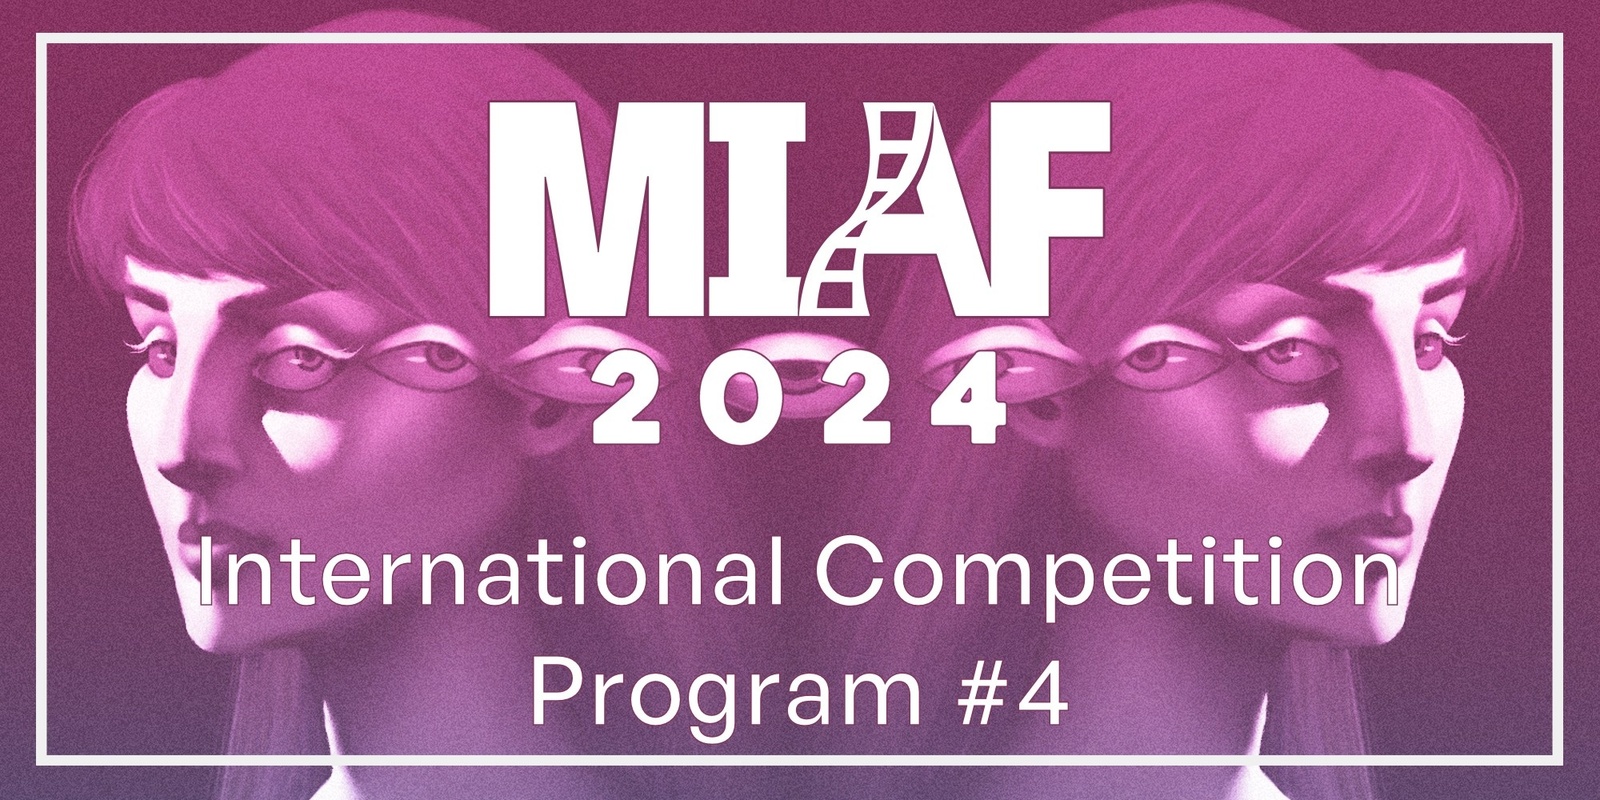 Banner image for MIAF 2024 - International Competition Program #4